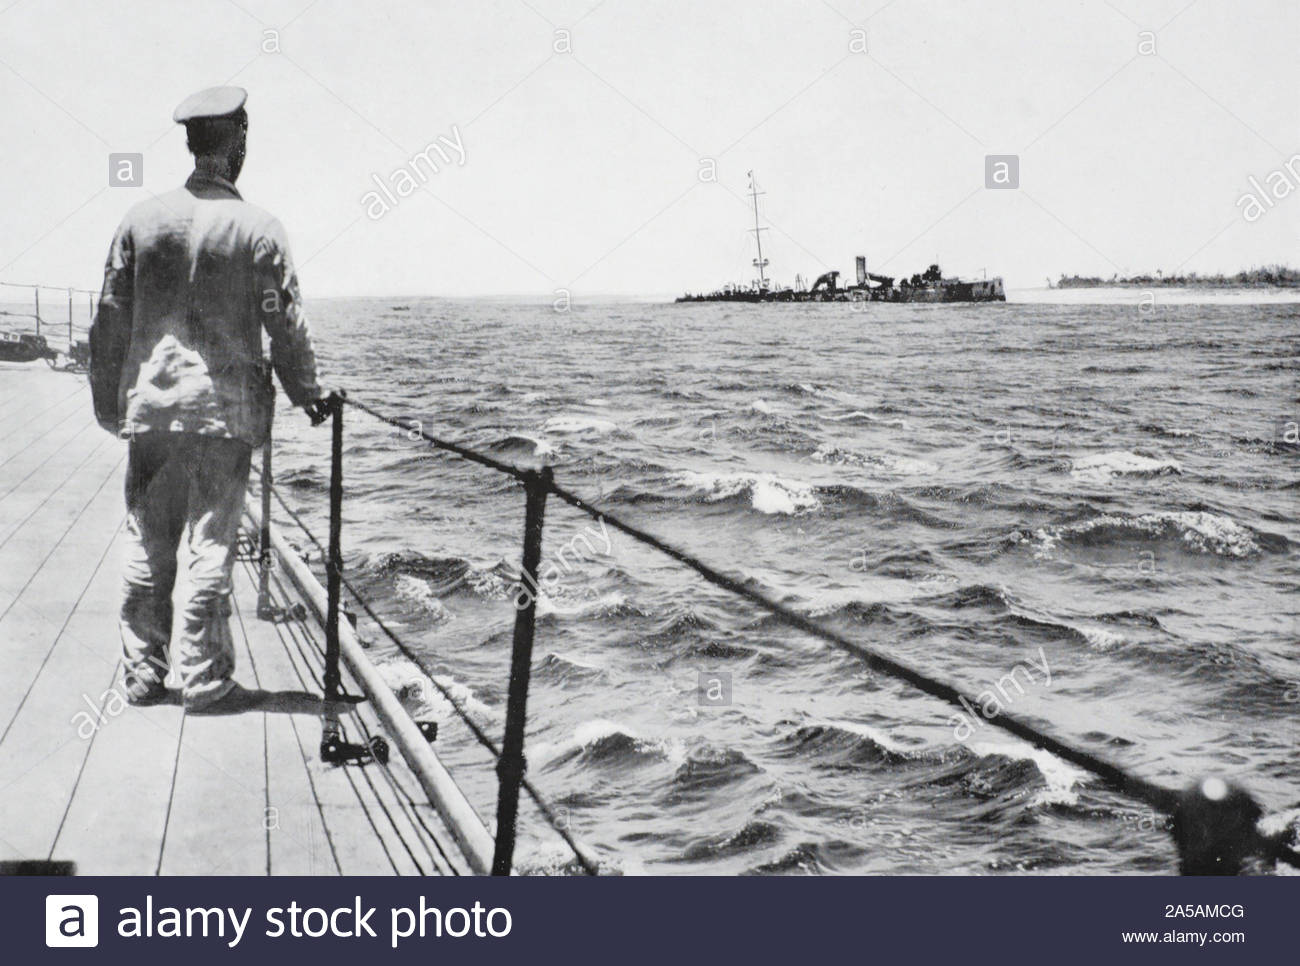 WW 1 SMS Emden war ein Dresden Klasse leichter Kreuzer der kaiserlichen deutschen Marine gebaut, hier gezeigt Offshore im Cocos Keeling Islands geerdet, nachdem er durch die Royal Australian Navy leichter Kreuzer HMAS Sydney während der Schlacht von Cocos deaktiviert, vintage Foto von 1914 Stockfoto